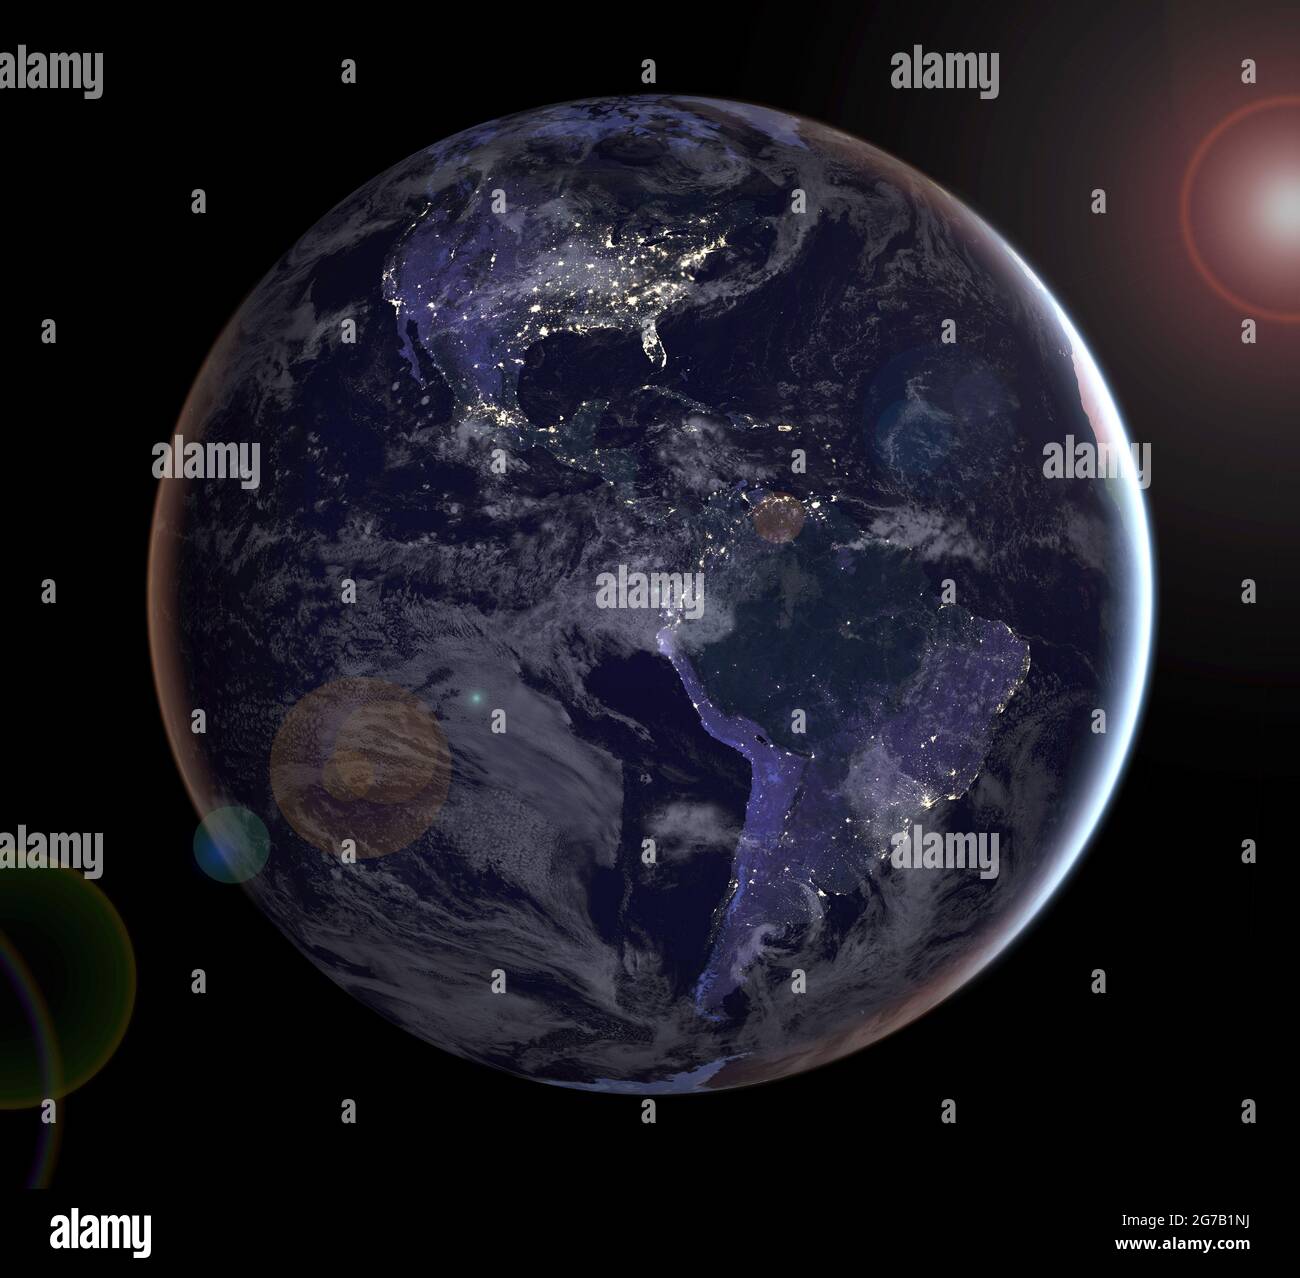 NASA-Wissenschaftler veröffentlichen neue globale Karten der Erde in der Nacht, die die klarste, aber zusammengesetzte Ansicht der Muster menschlicher Besiedlung auf unserem Planeten bieten. Dieses zusammengesetzte Bild, eine von drei neuen Ansichten der gesamten Hemisphäre, bietet einen Blick auf Nord- und Südamerika bei Nacht. Die Wolken und der Sonnenglint Ñ hier zur ästhetischen Wirkung hinzugefügt Ñ stammen aus MODIS-Instrumenten-Landoberflächen- und Wolkendeckungsprodukten. Eine einzigartige optimierte und digital verbesserte Version eines NASA-Bildes/Credit NASA Stockfoto